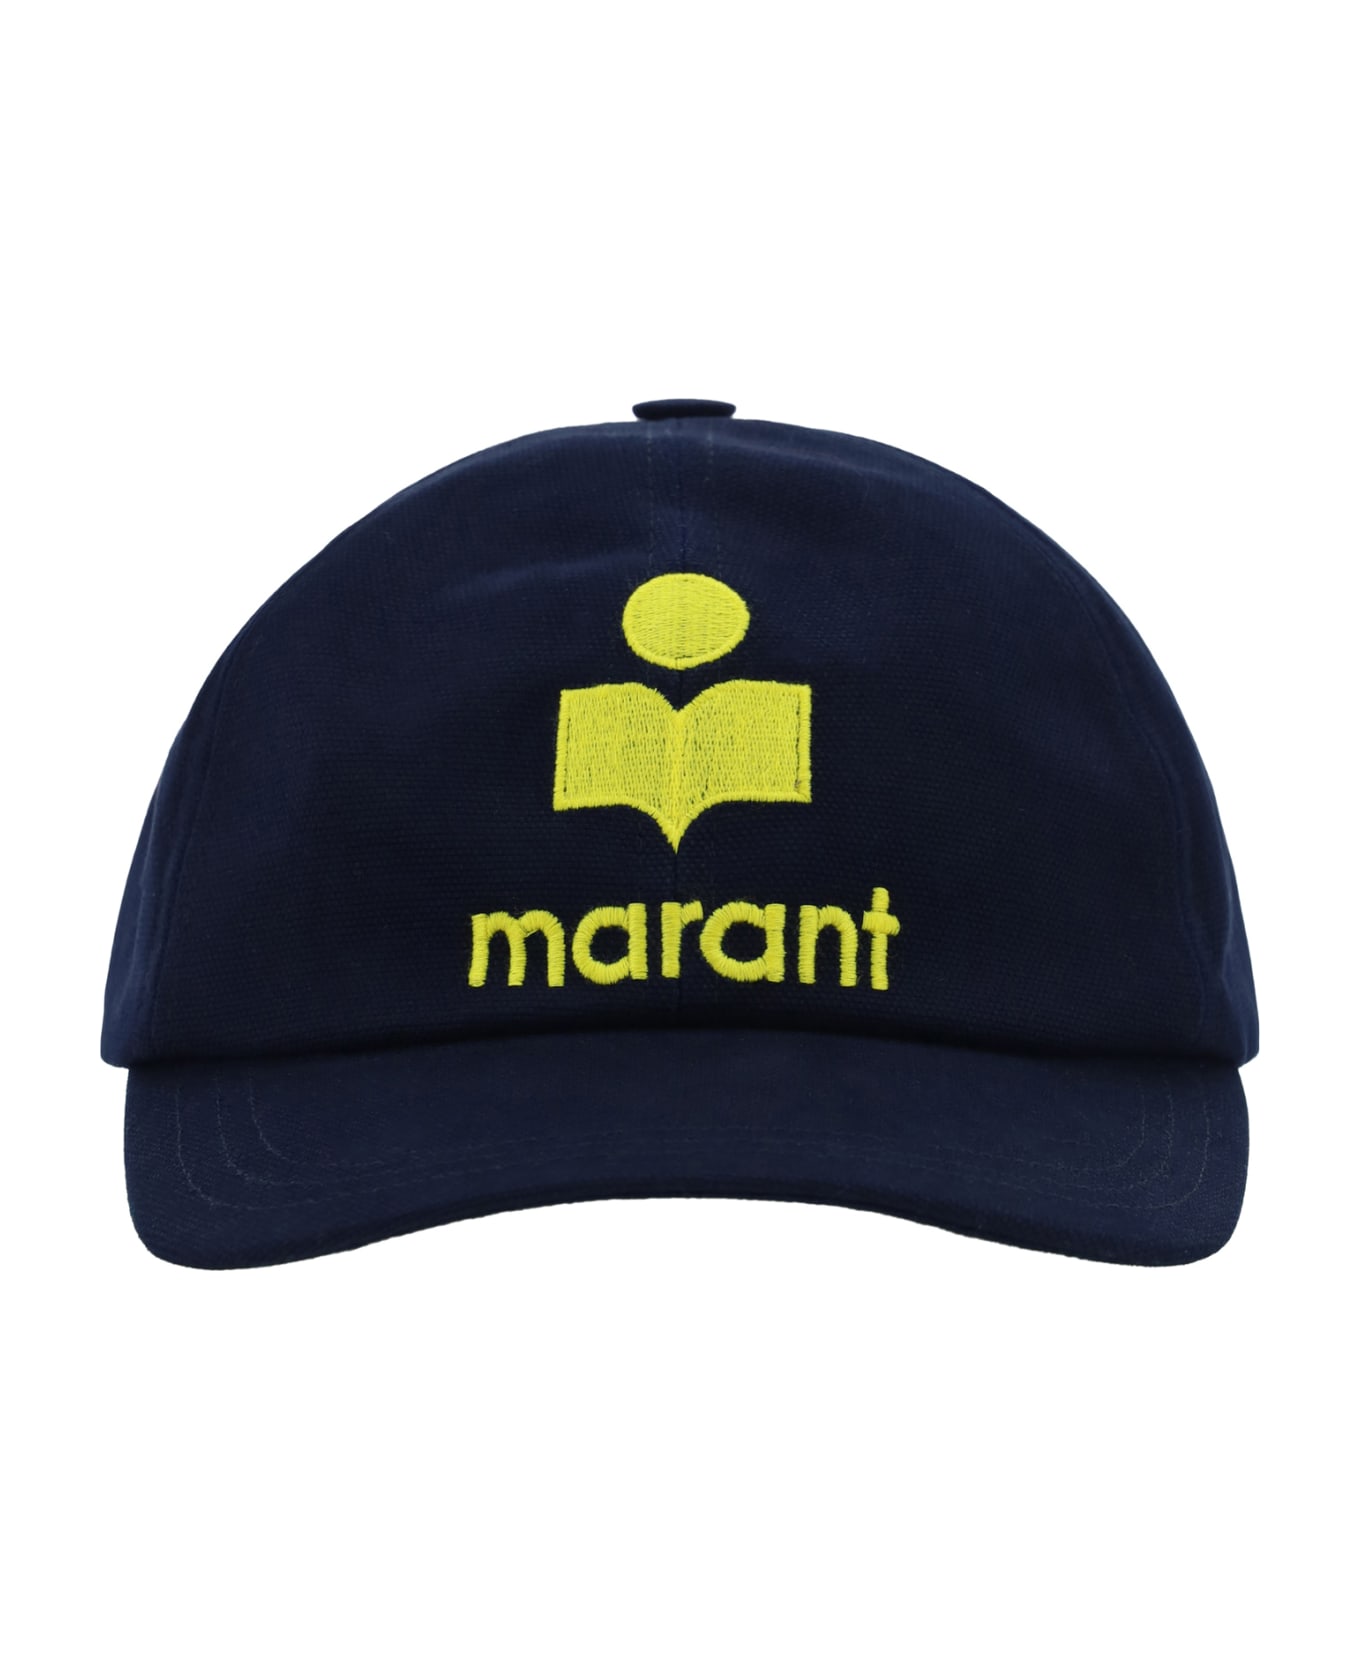 Marant Étoile Tyron Baseball Hat - Midnight/yellow